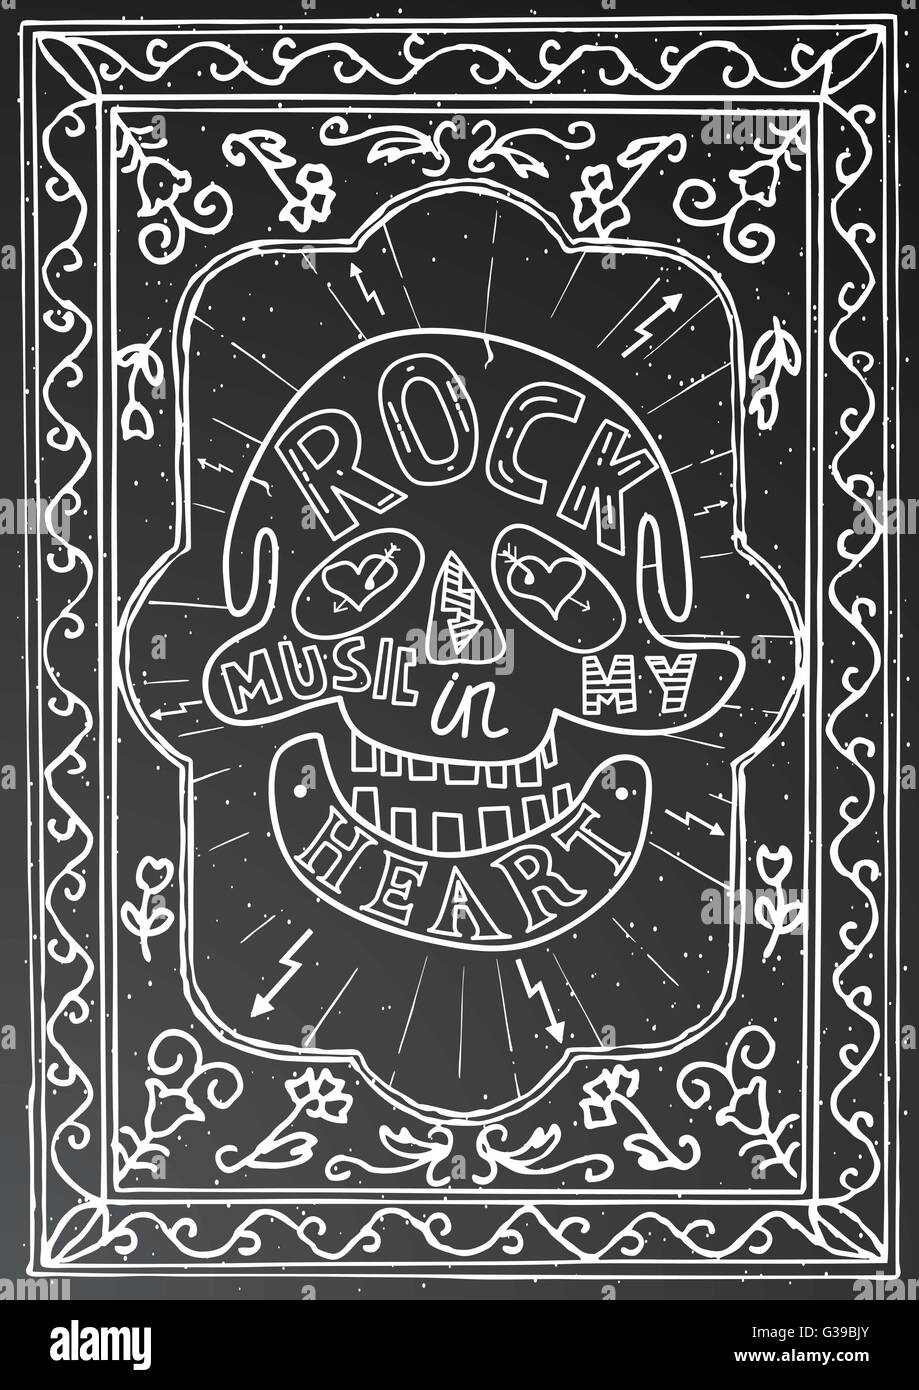 Rock-Musik in meinem Herzen. Handgezeichnete Schriftzug Design mit Totenkopf und Rahmen auf schwarze Kreide an Bord. Typografie-Konzept für t-shirt Stock Vektor